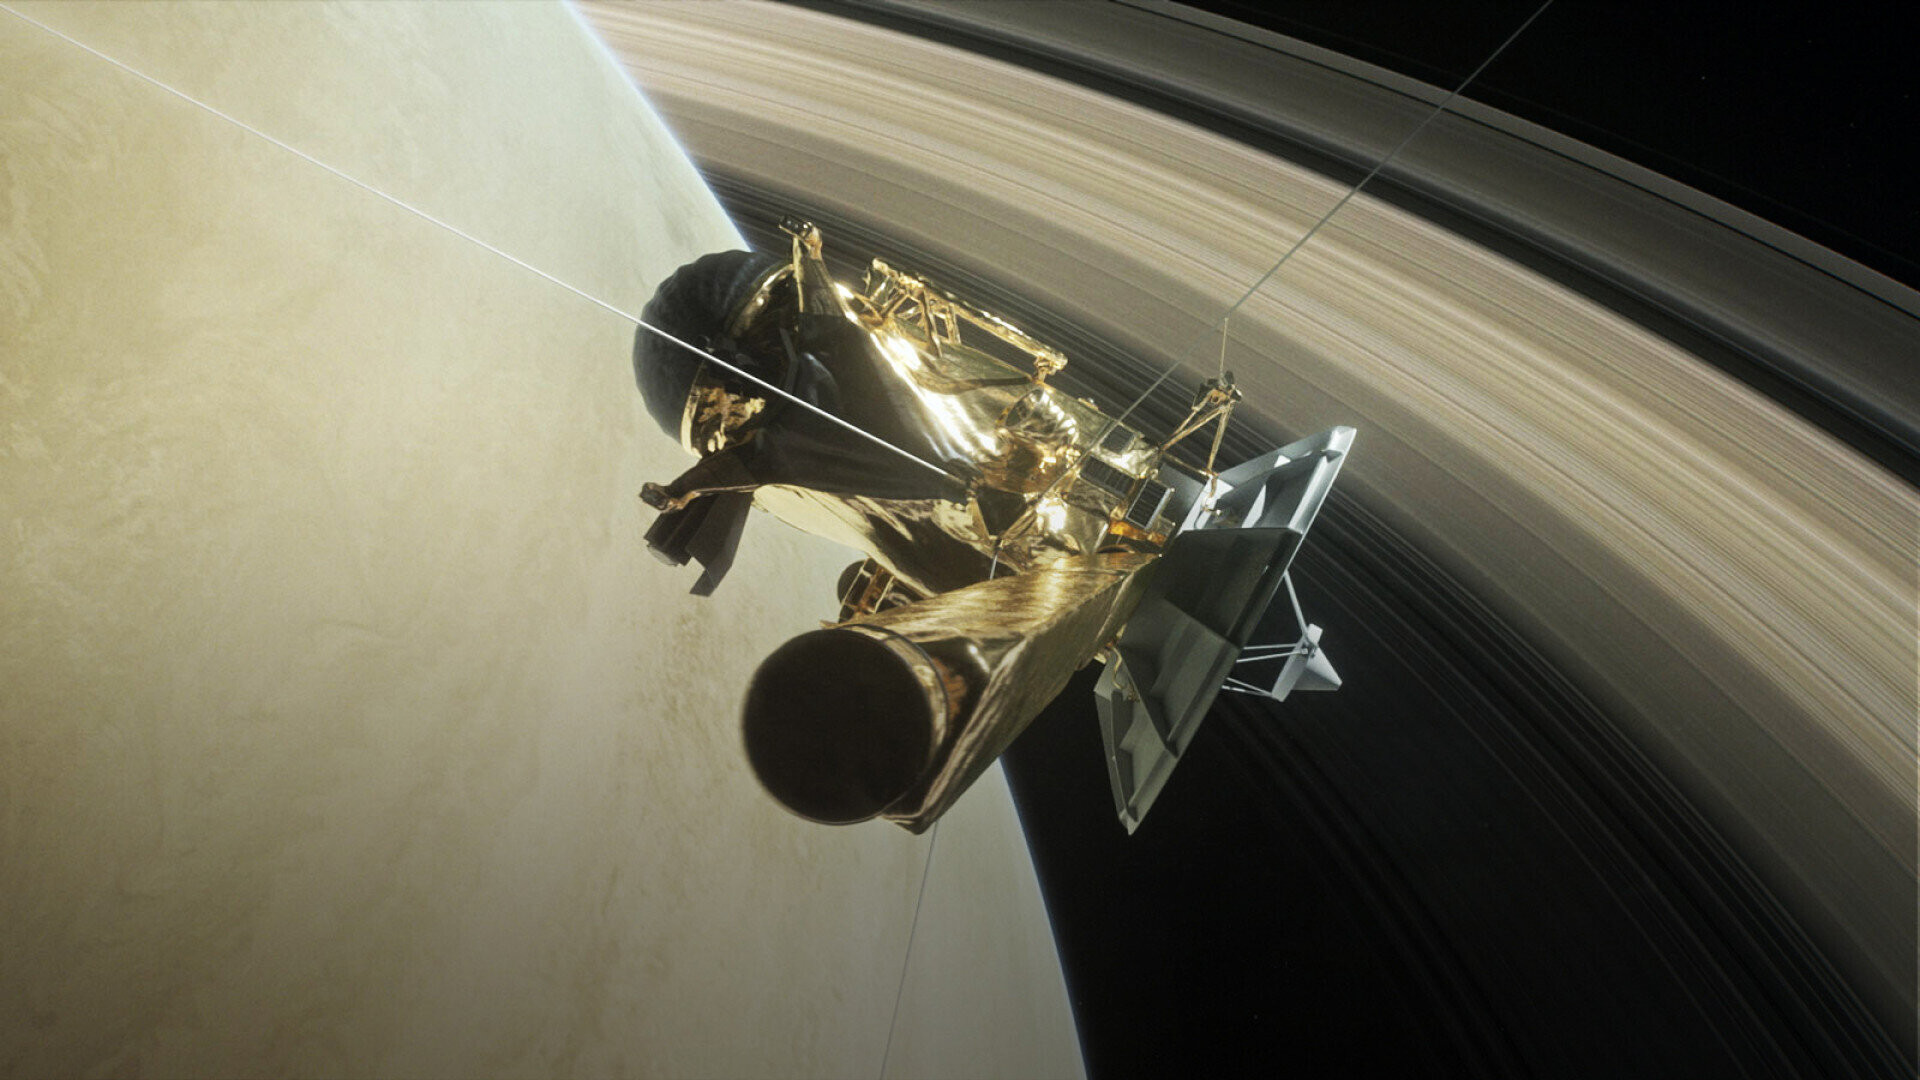 Tàu thăm dò sao Thổ Cassini là kết quả hợp tác giữa NASA, Cơ quan Vũ trụ châu Âu và Cơ quan Vũ trụ Ý. Cassini đã thu thập dữ liệu về Sao Mộc trong một chuyến bay ngang qua, trước khi bay tới Sao Thổ. Tại Thổ tinh, Cassini thu được lượng lớn dữ liệu và hình ảnh từ các vành đai của hành tinh này. Nhìn chung, Cassini trải qua 20 năm trong không gian trước khi nó lao thẳng vào Sao Thổ vào ngày 15/9/2017. (Ảnh: Google)